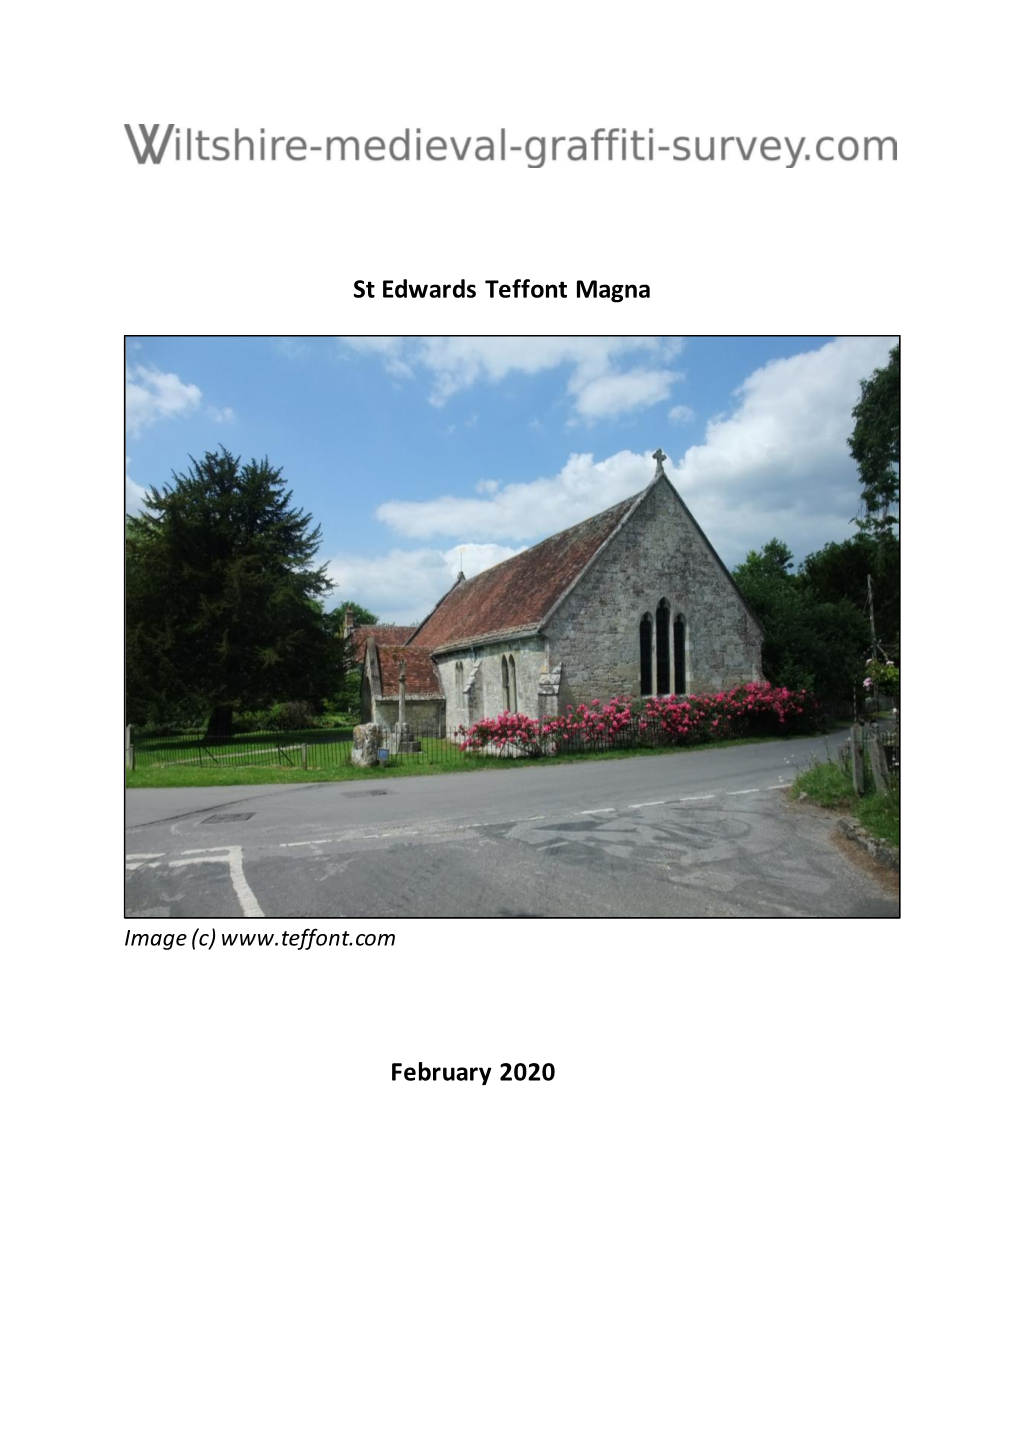 St Edwards Teffont Magna February 2020